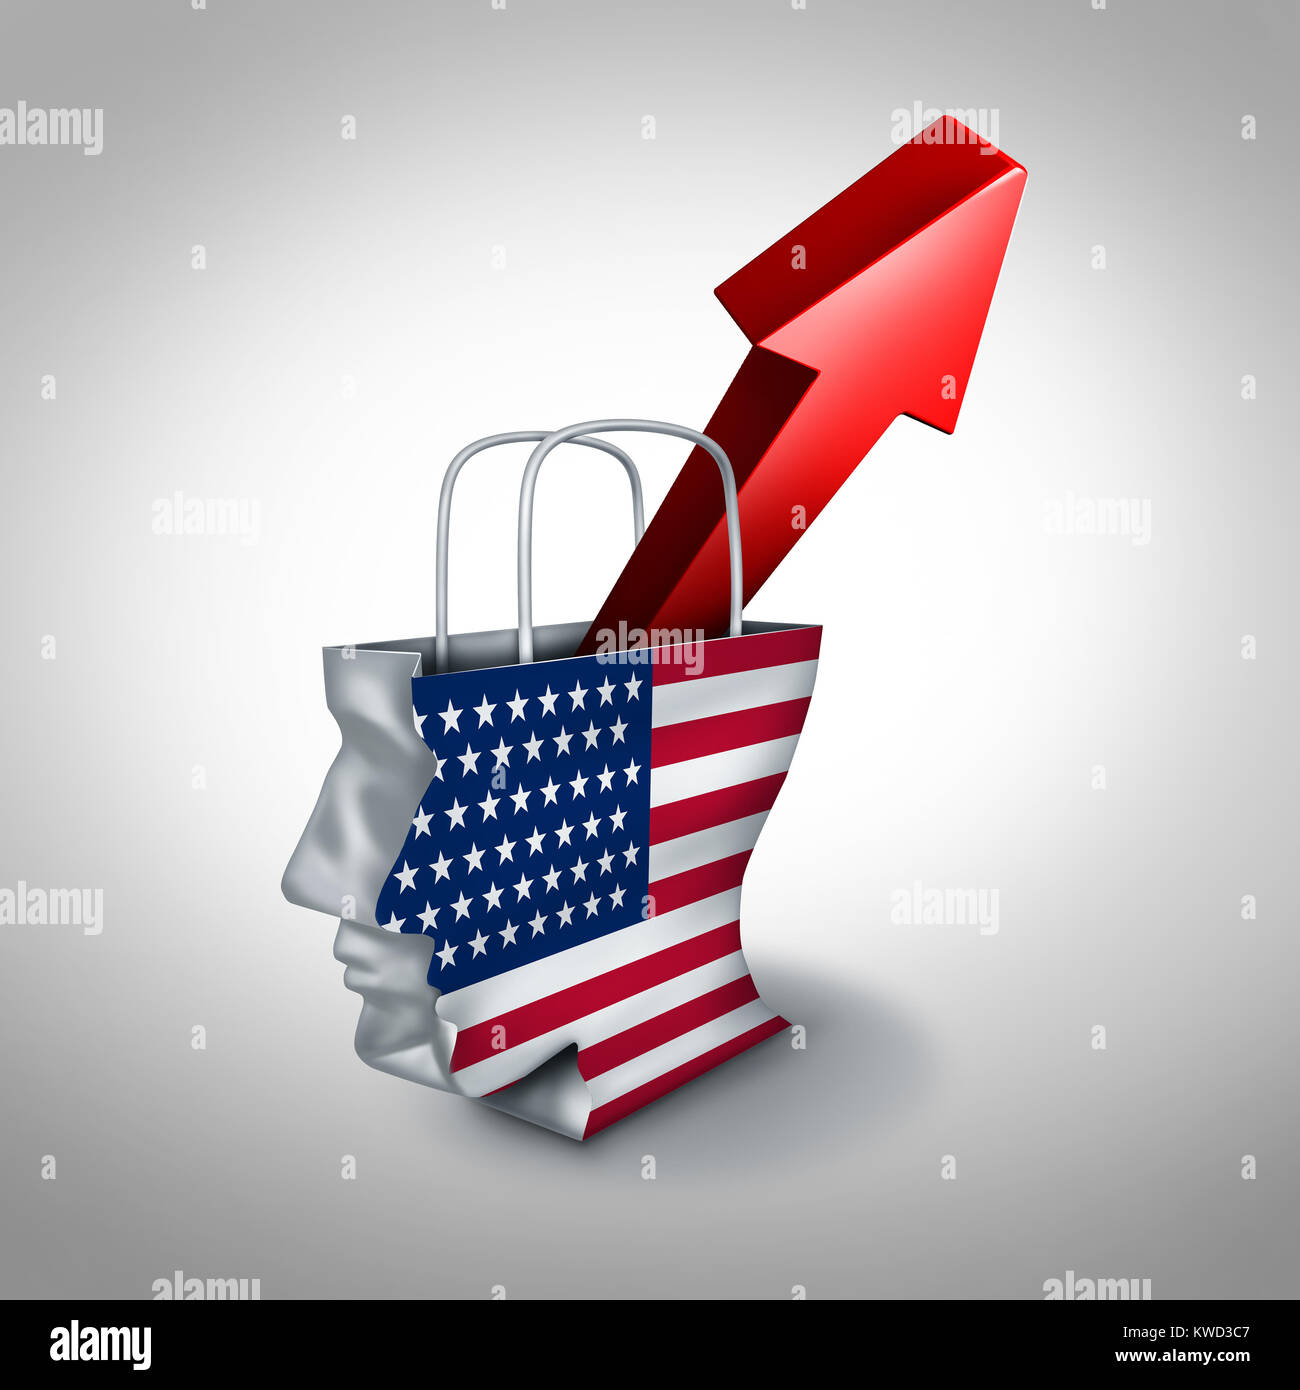 United States, das Vertrauen der Verbraucher in einem wachsenden amerikanischen Markt von Gütern und Dienstleistungen und der steigenden Erfolg der US-Einzelhandel. Stockfoto